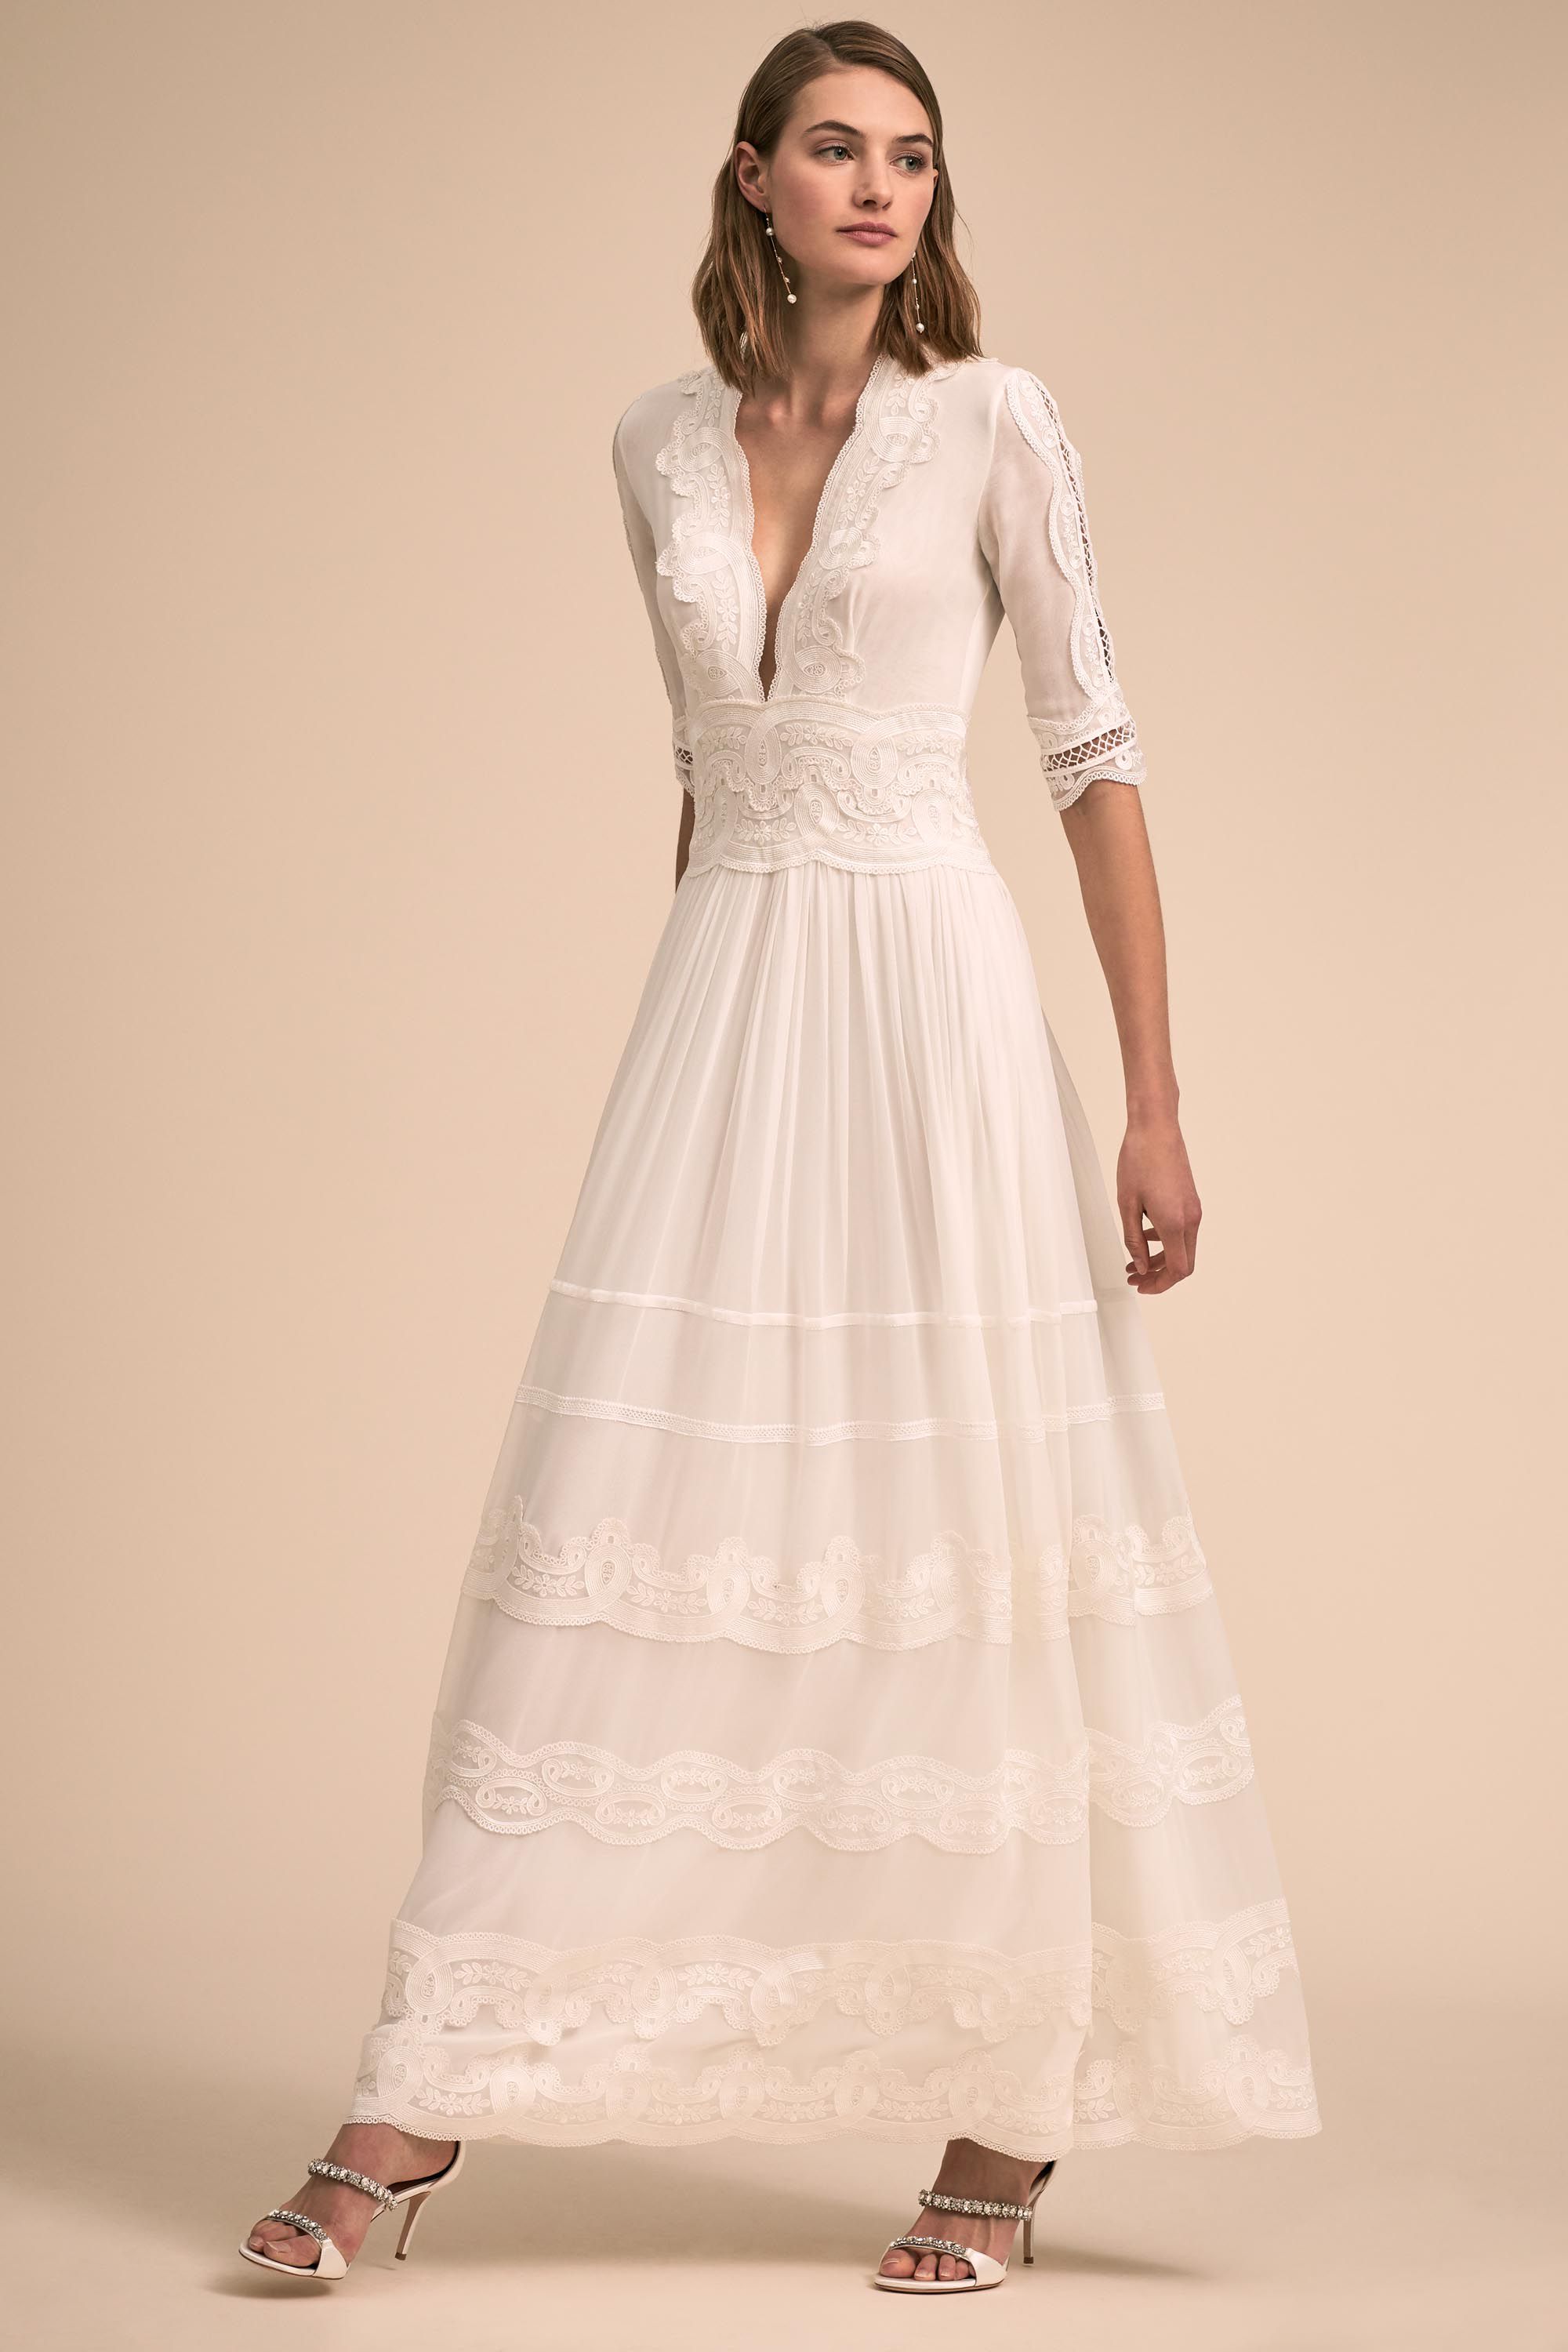 wedding dresses 1940s inspired